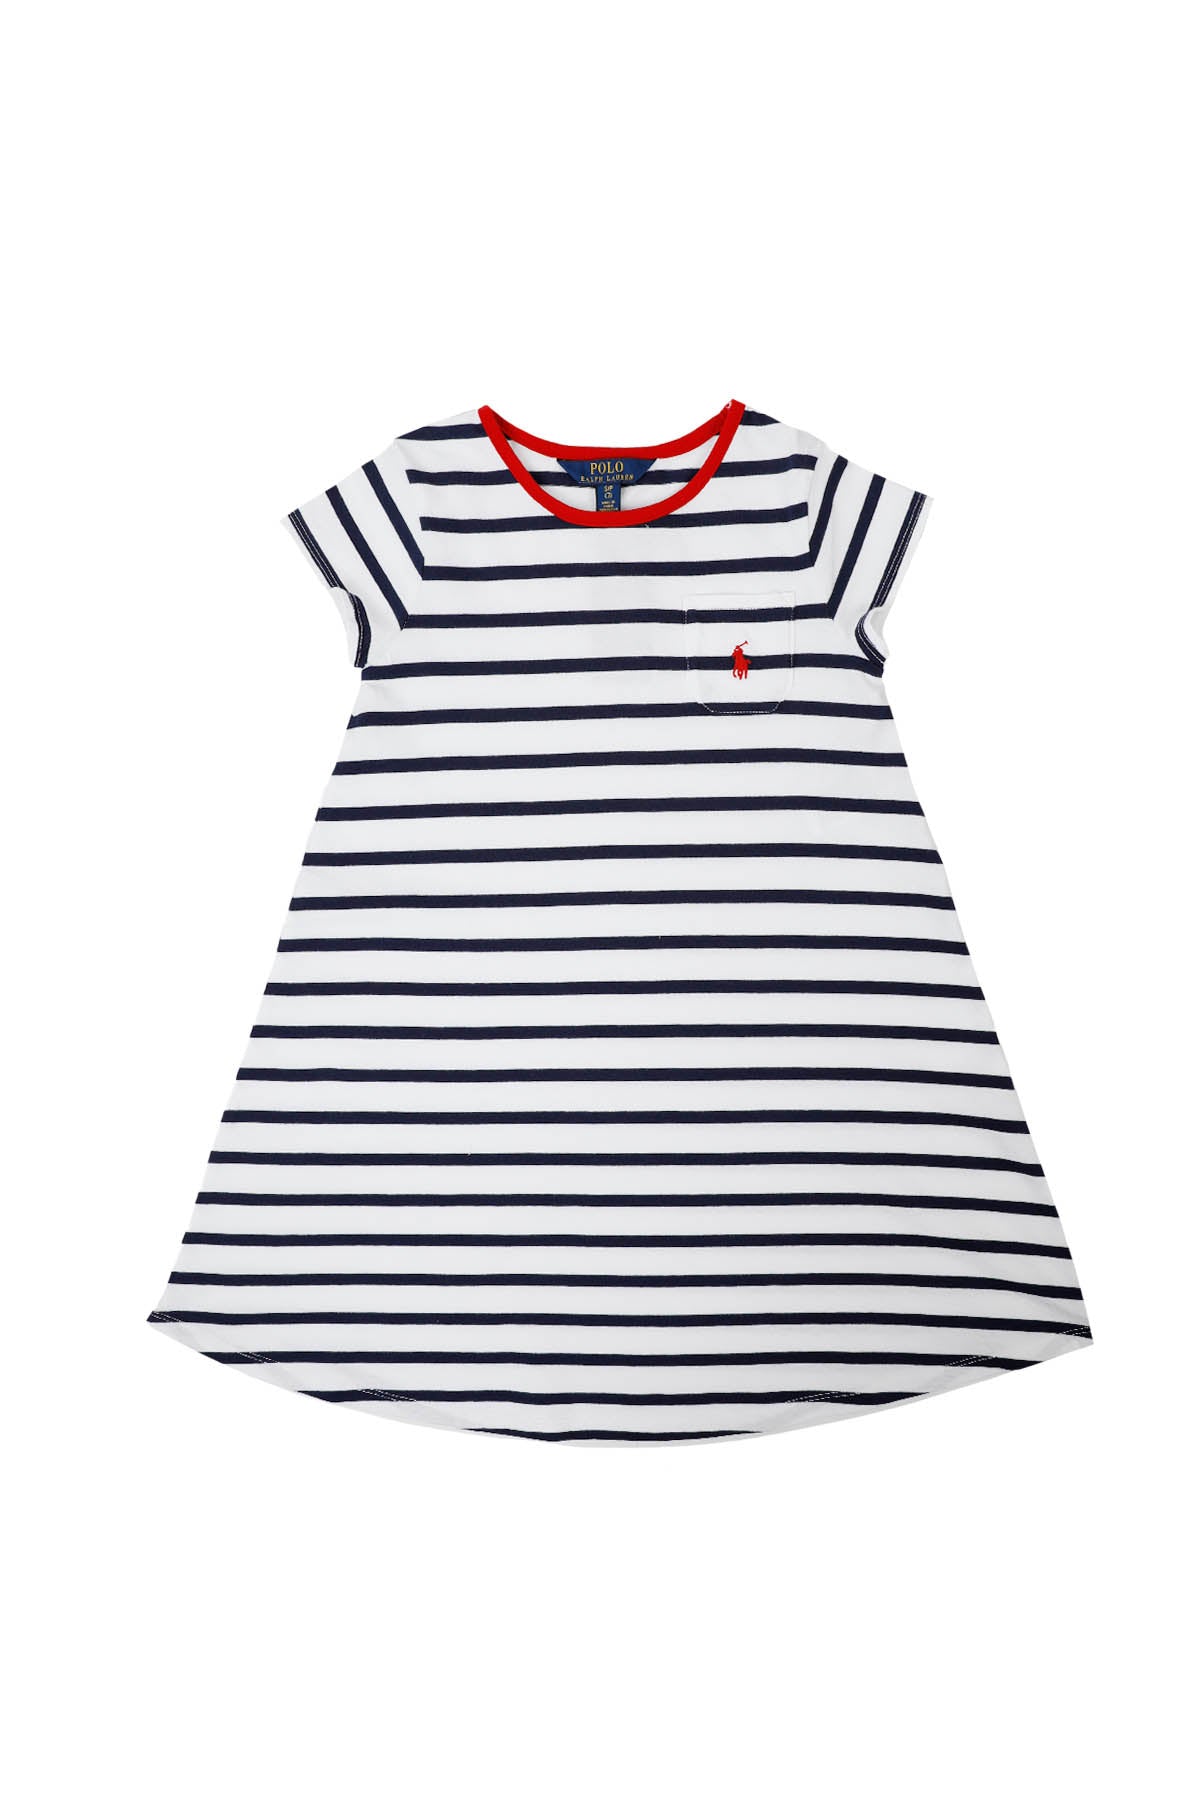 Polo Ralph Lauren S-M Kız Çocuk Çizgili Elbise